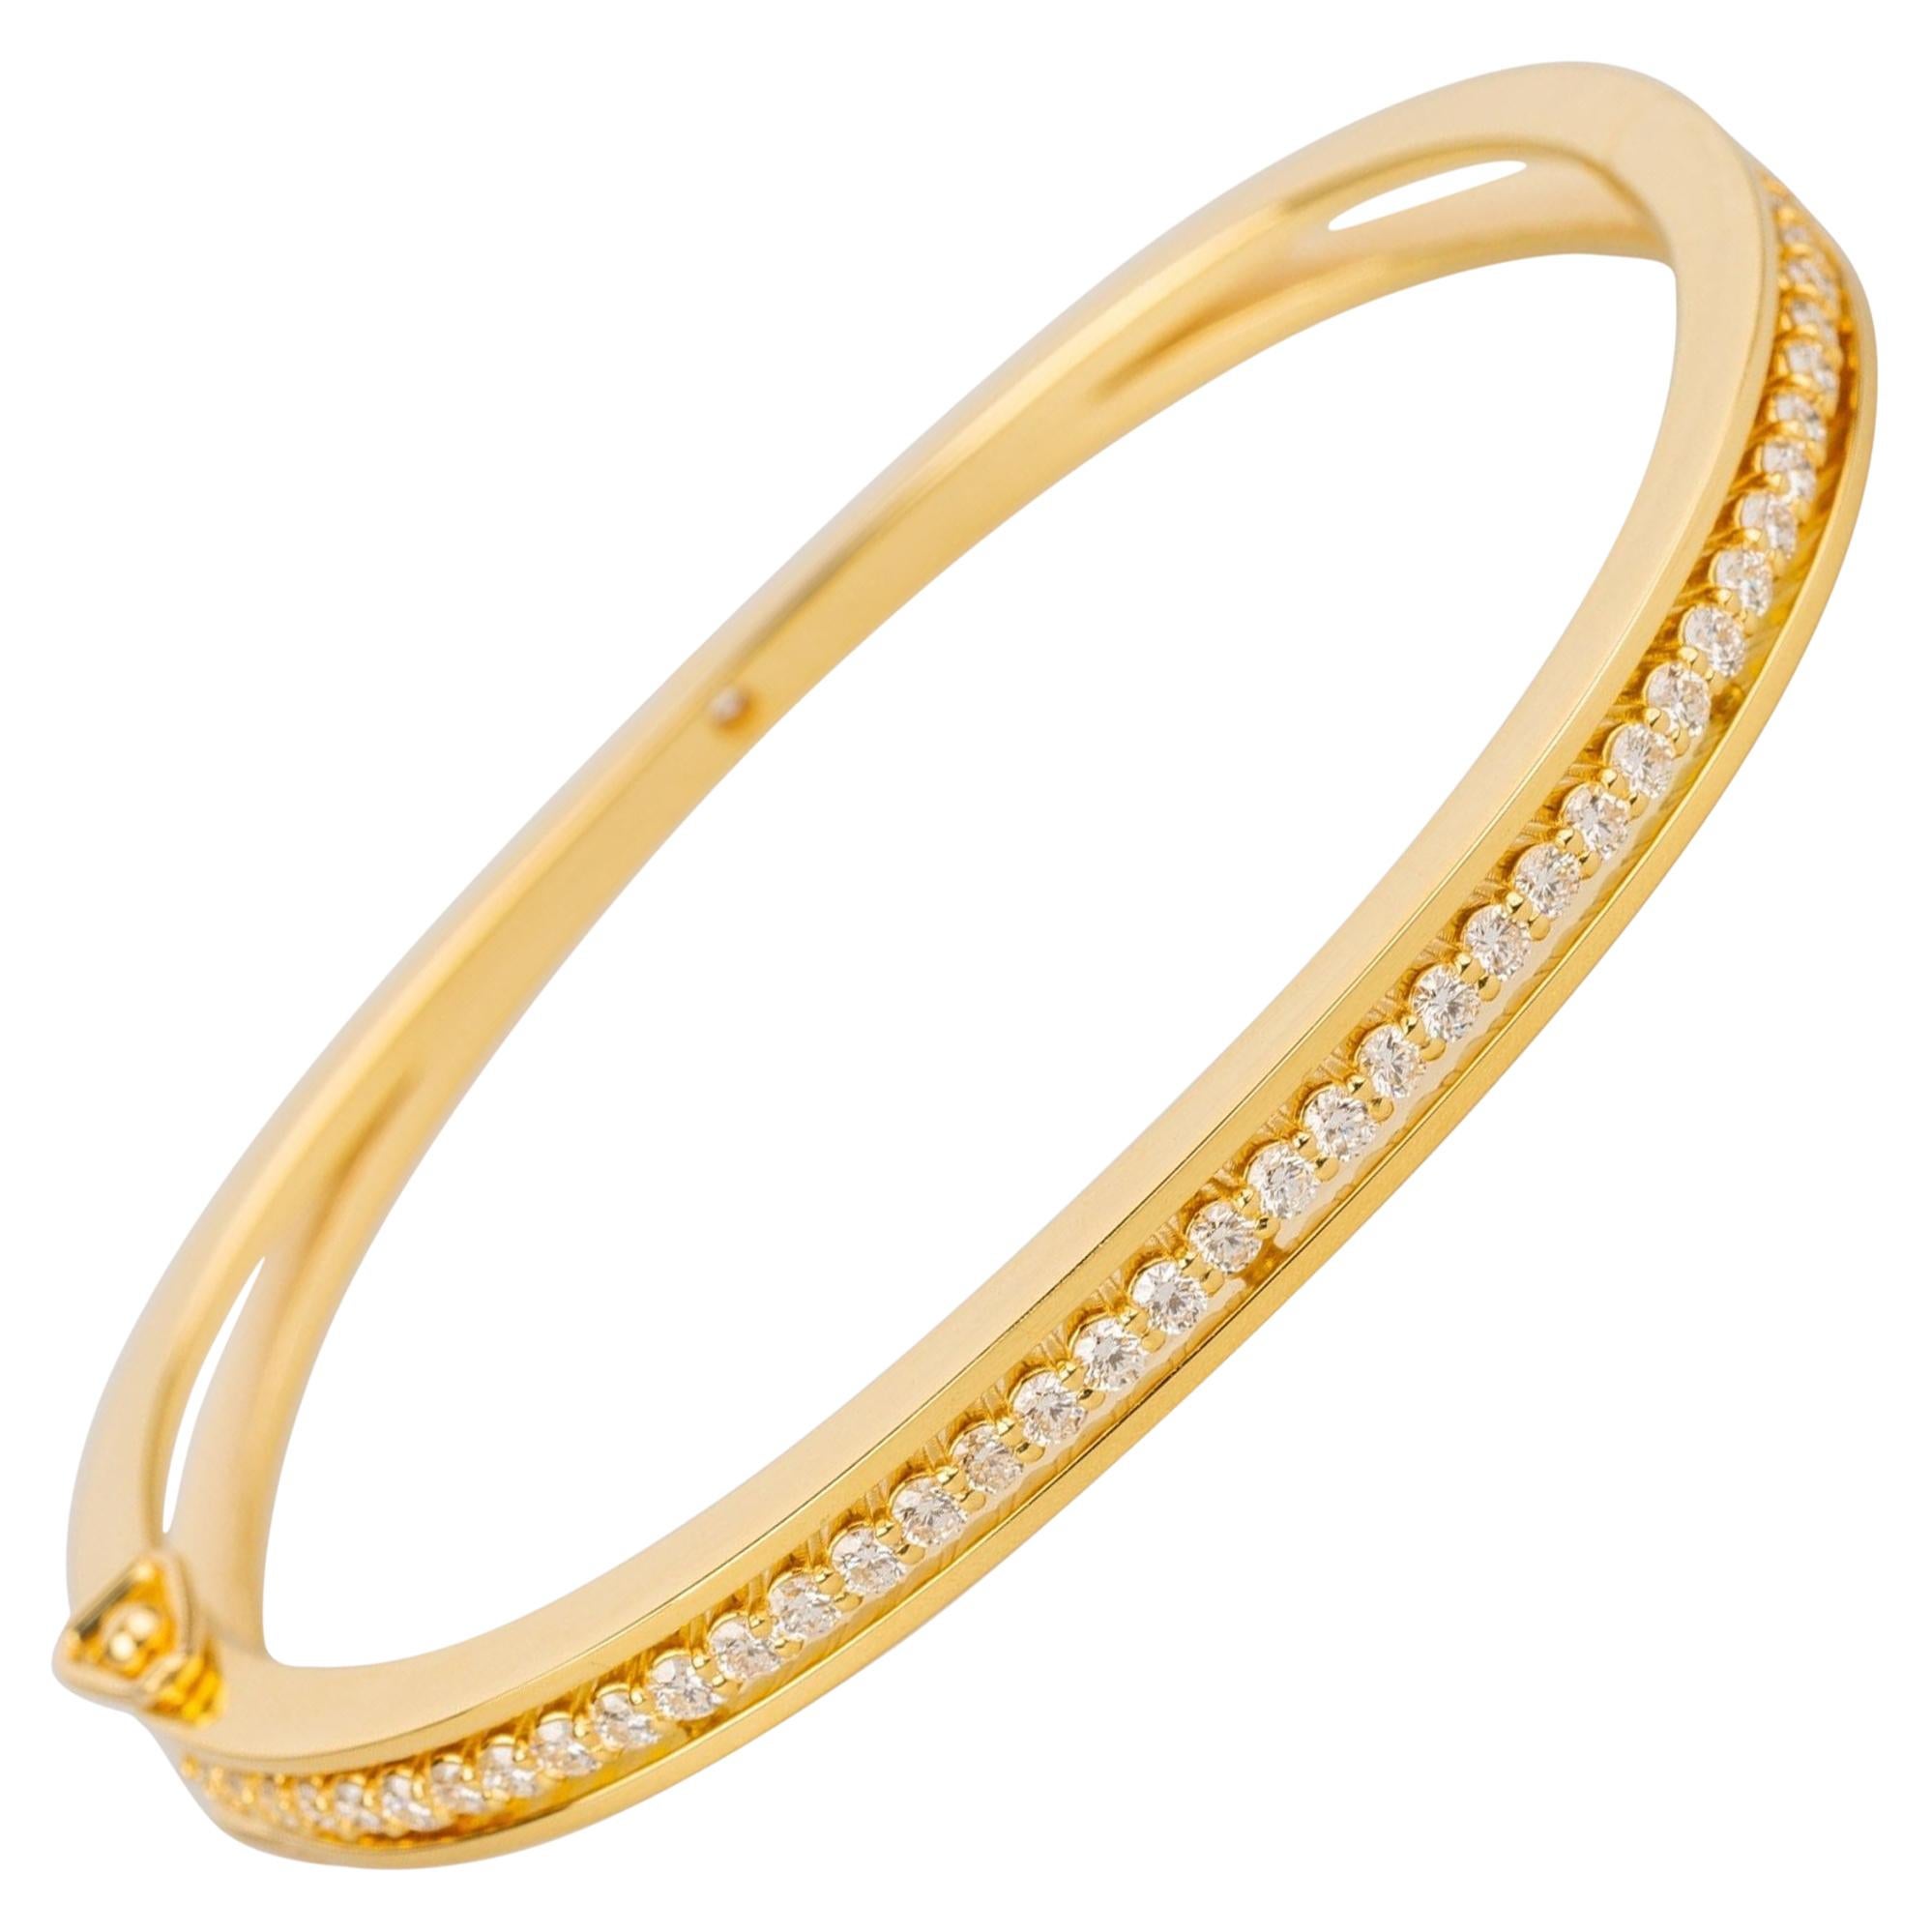 Armband aus 18 Karat Gelbgold mit schwebenden 1,20 Karat weißen Diamanten